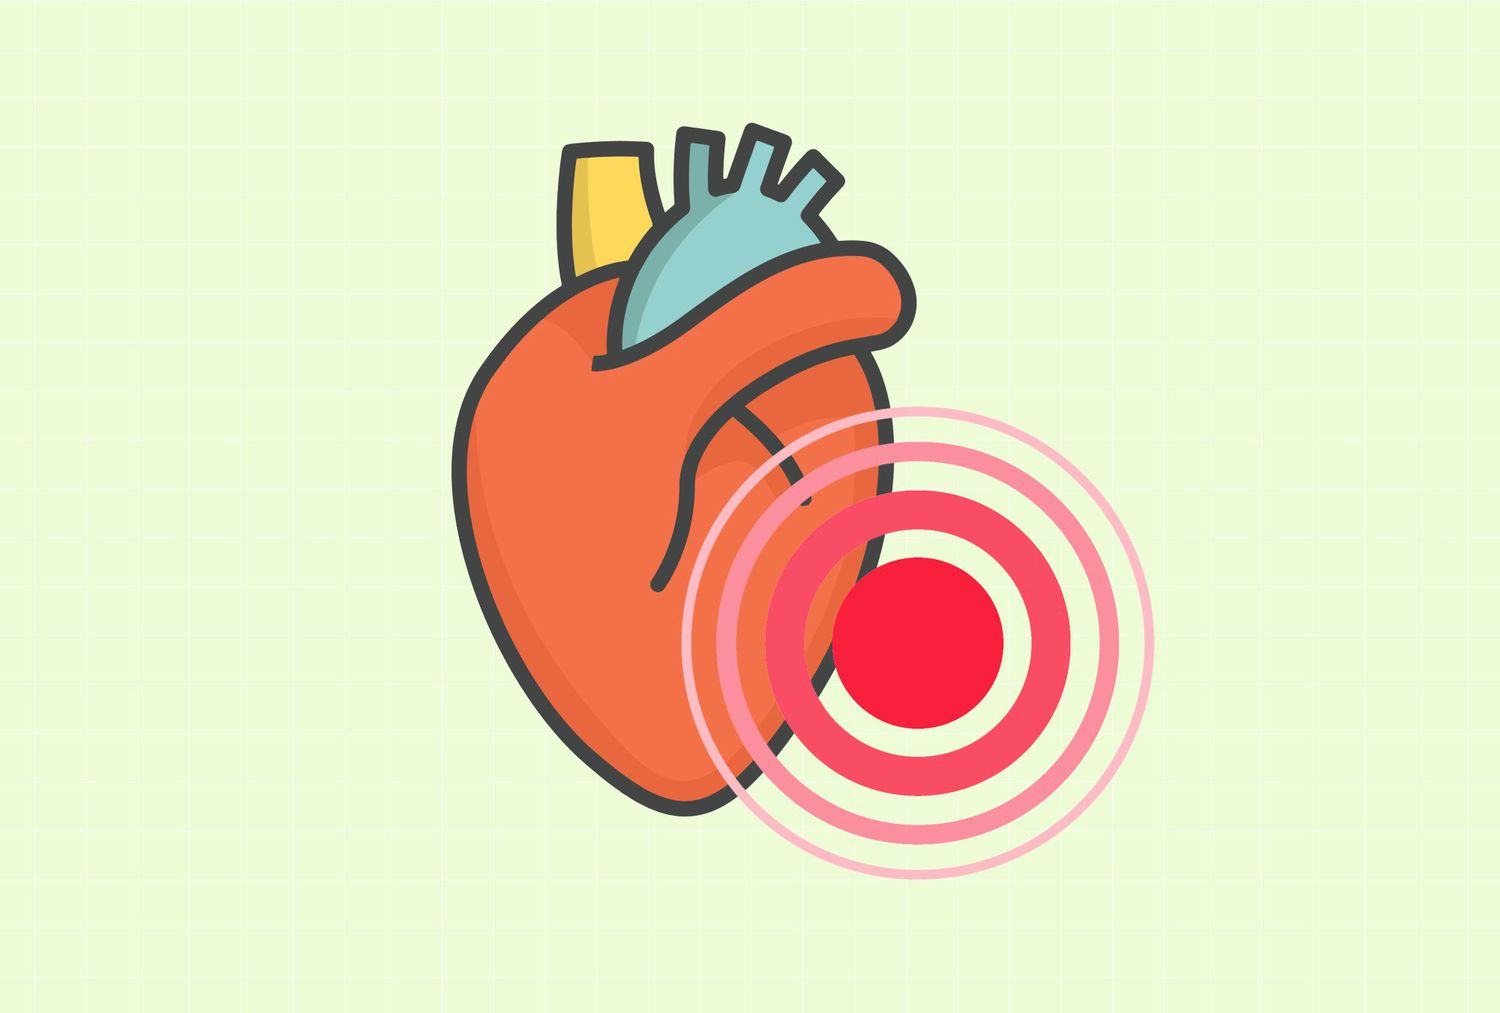 La inflamación crónica puede causar altos niveles de colesterol al reducir el colesterol HDL, que es una buena bola, y aumentar el colesterol LDL, que es una pelota mala. También provoca la liberación de sustancias que aumentan el colesterol en las paredes arteriales, causando arteriosclerosis y enfermedad cardíaca. Por el contrario, el alto colesterol daña los vasos sanguíneos y promueve la inflamación.